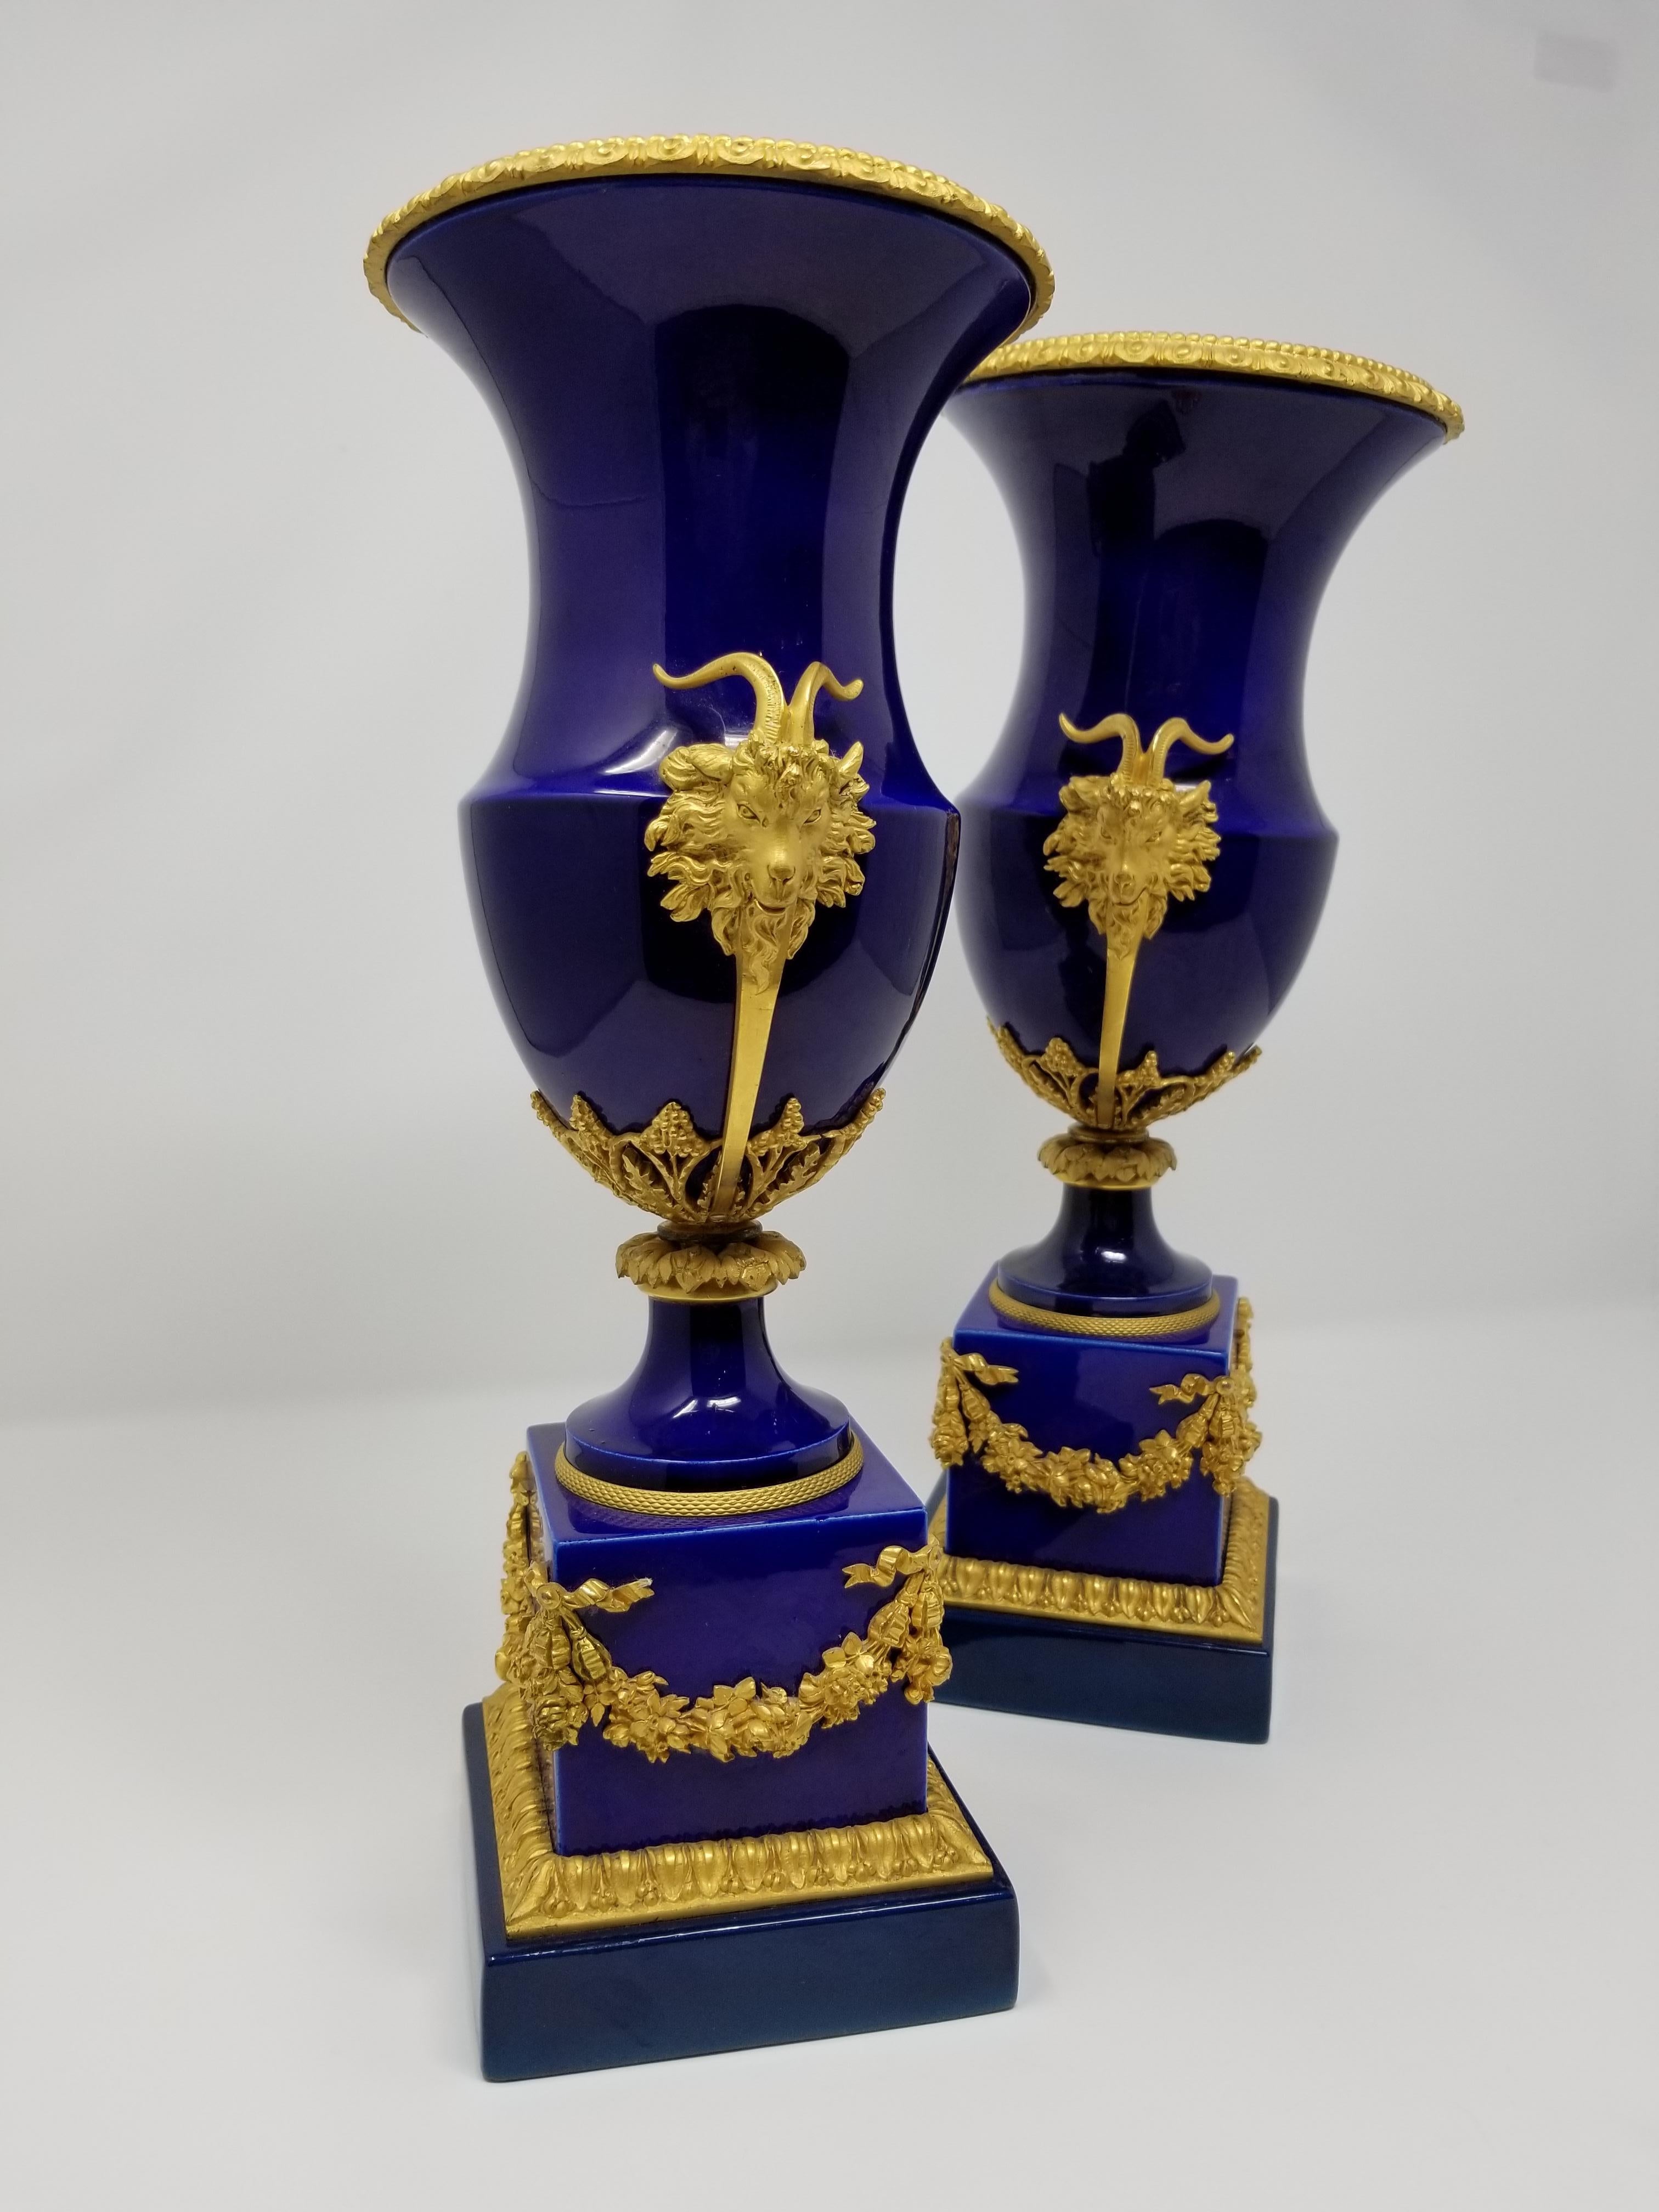 Ein wunderschönes Paar kobaltblauer und ormolierter Vasen mit Widderköpfen und Kränzen im Stil des 19. Jahrhunderts aus Sèvres. Der Porzellankörper ist wunderschön mit dem charakteristischen Kobaltblau von Sèvres Royal bemalt. Der quadratische